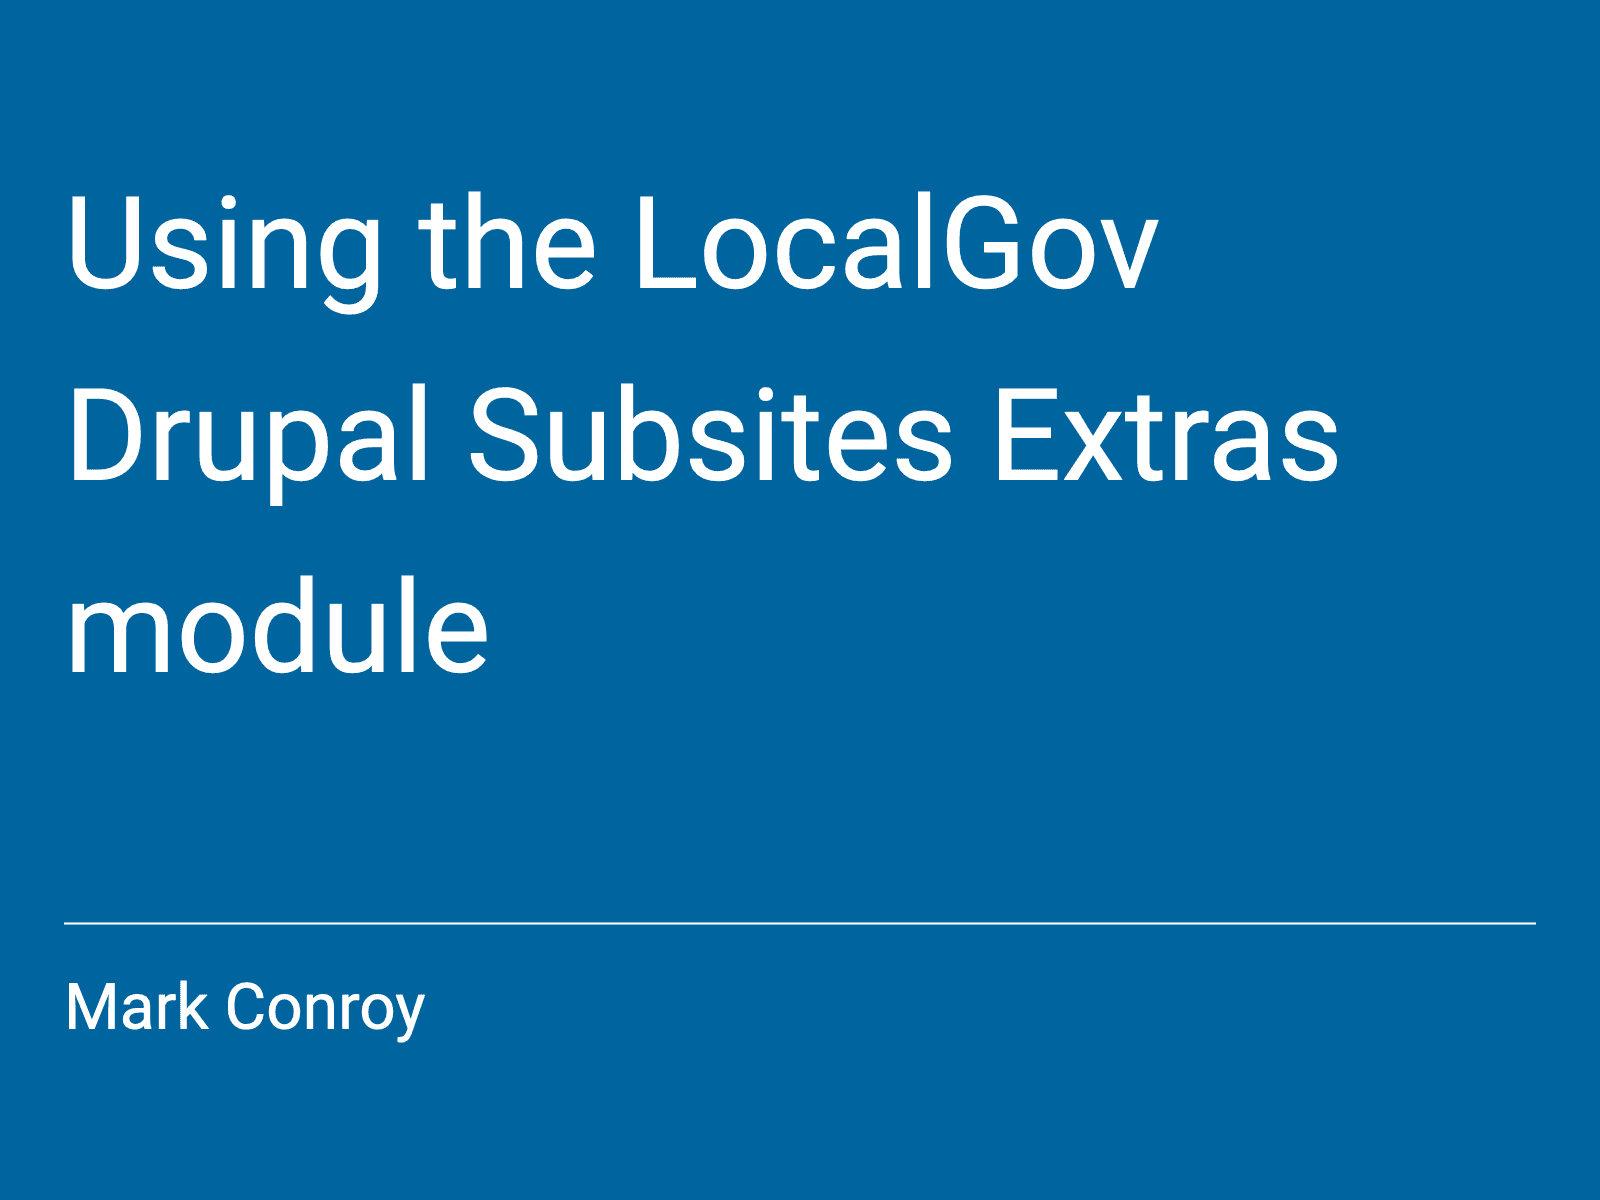 LocalGov Drupal Subsites Extras module